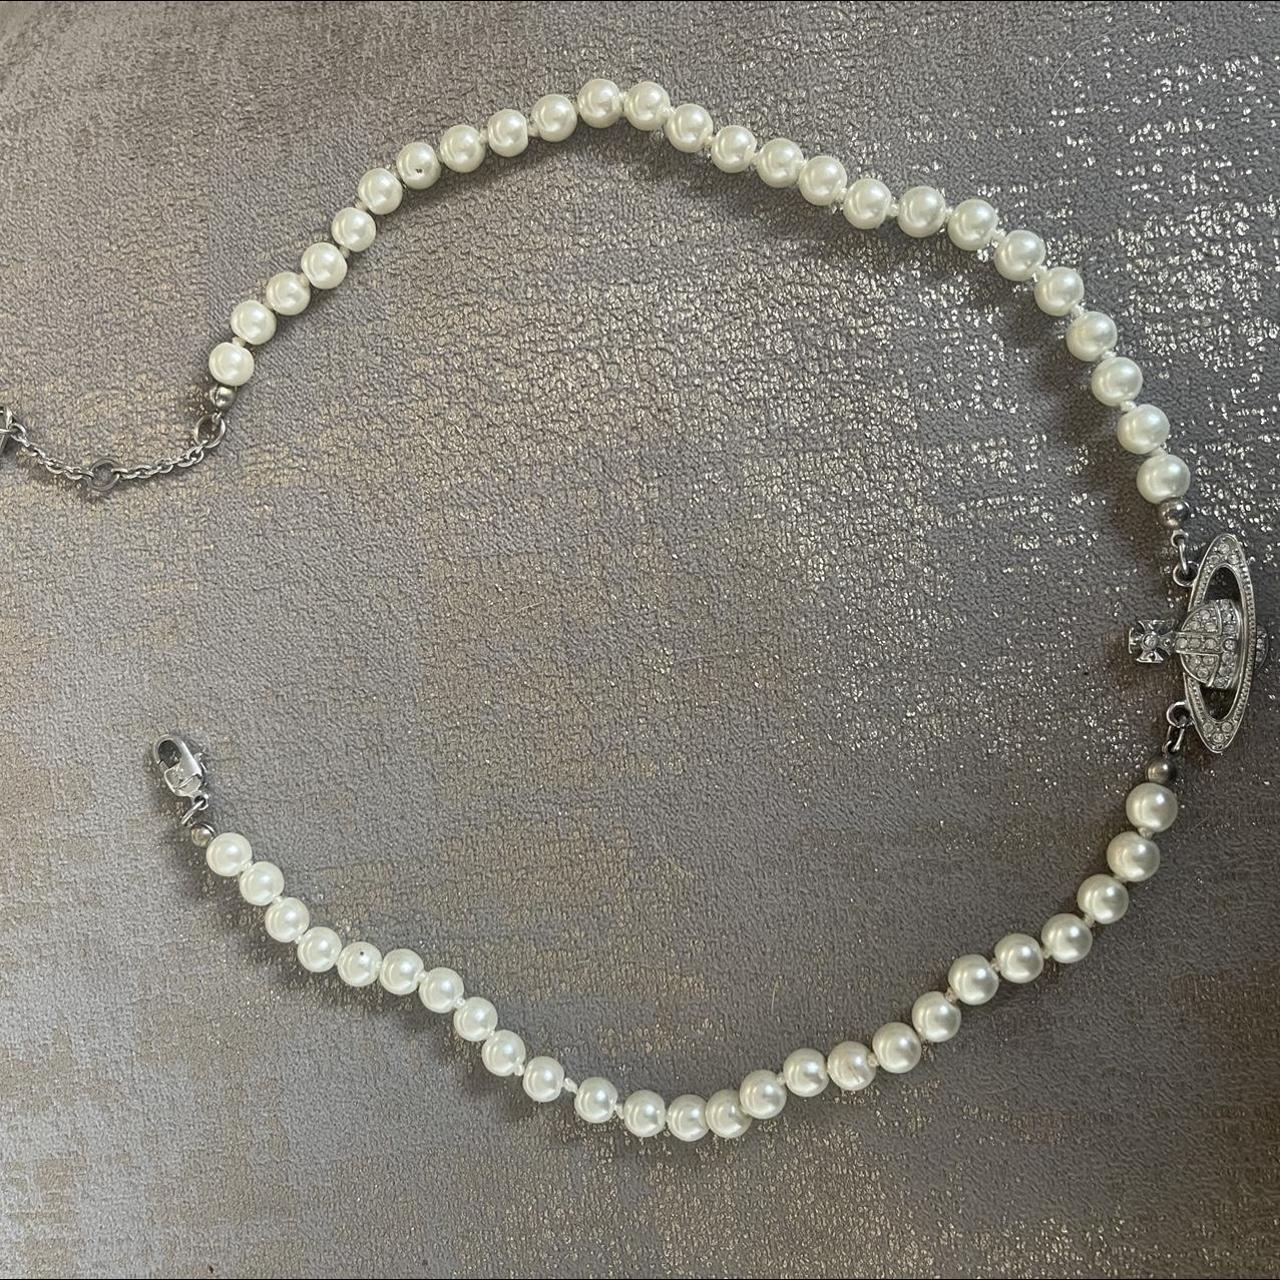 Vivienne Westwood pearl necklace - worn handful of... - Depop